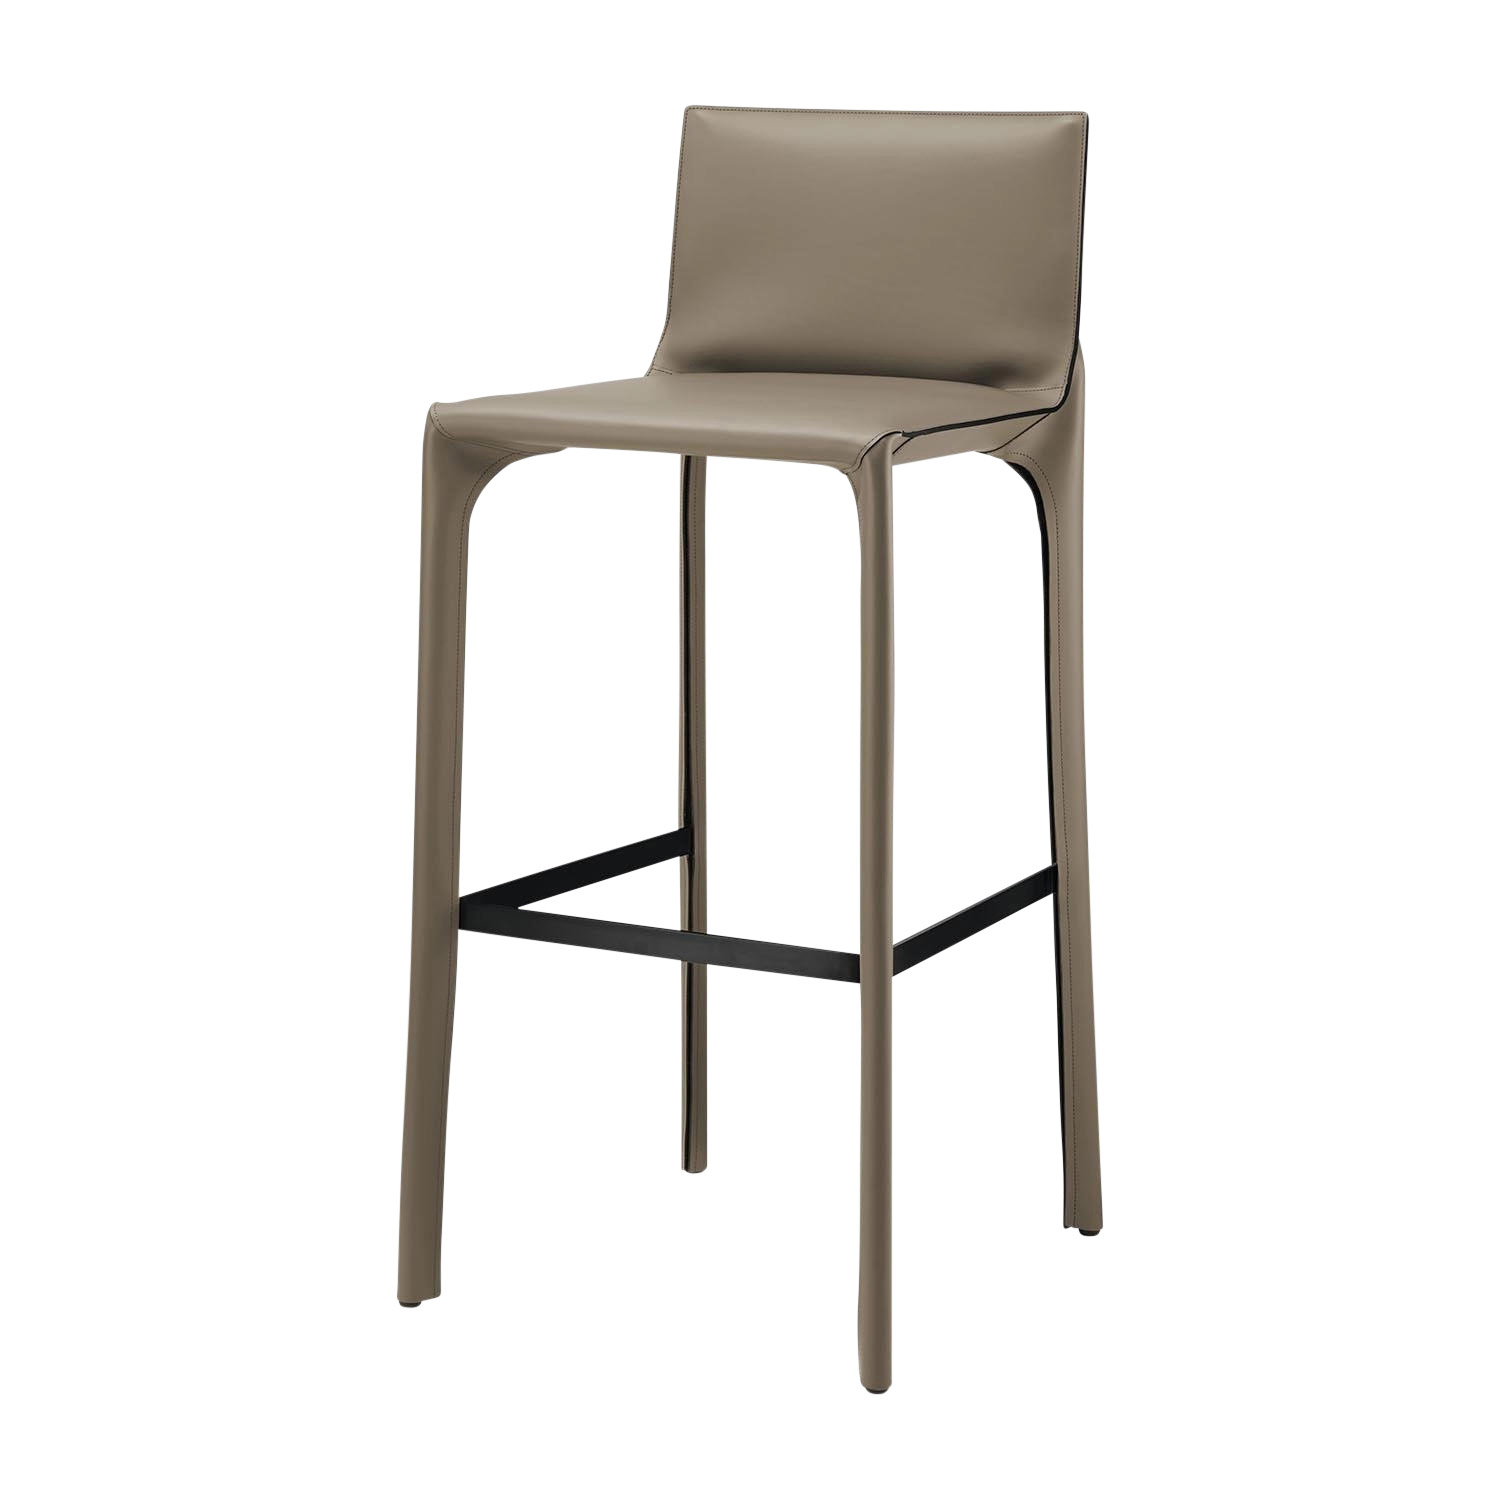 Saddle Chair Barhocker mit Rückenlehne, Sitzhöhe 68 cm, Bezug leder paco, sienna1423 von Walter Knoll